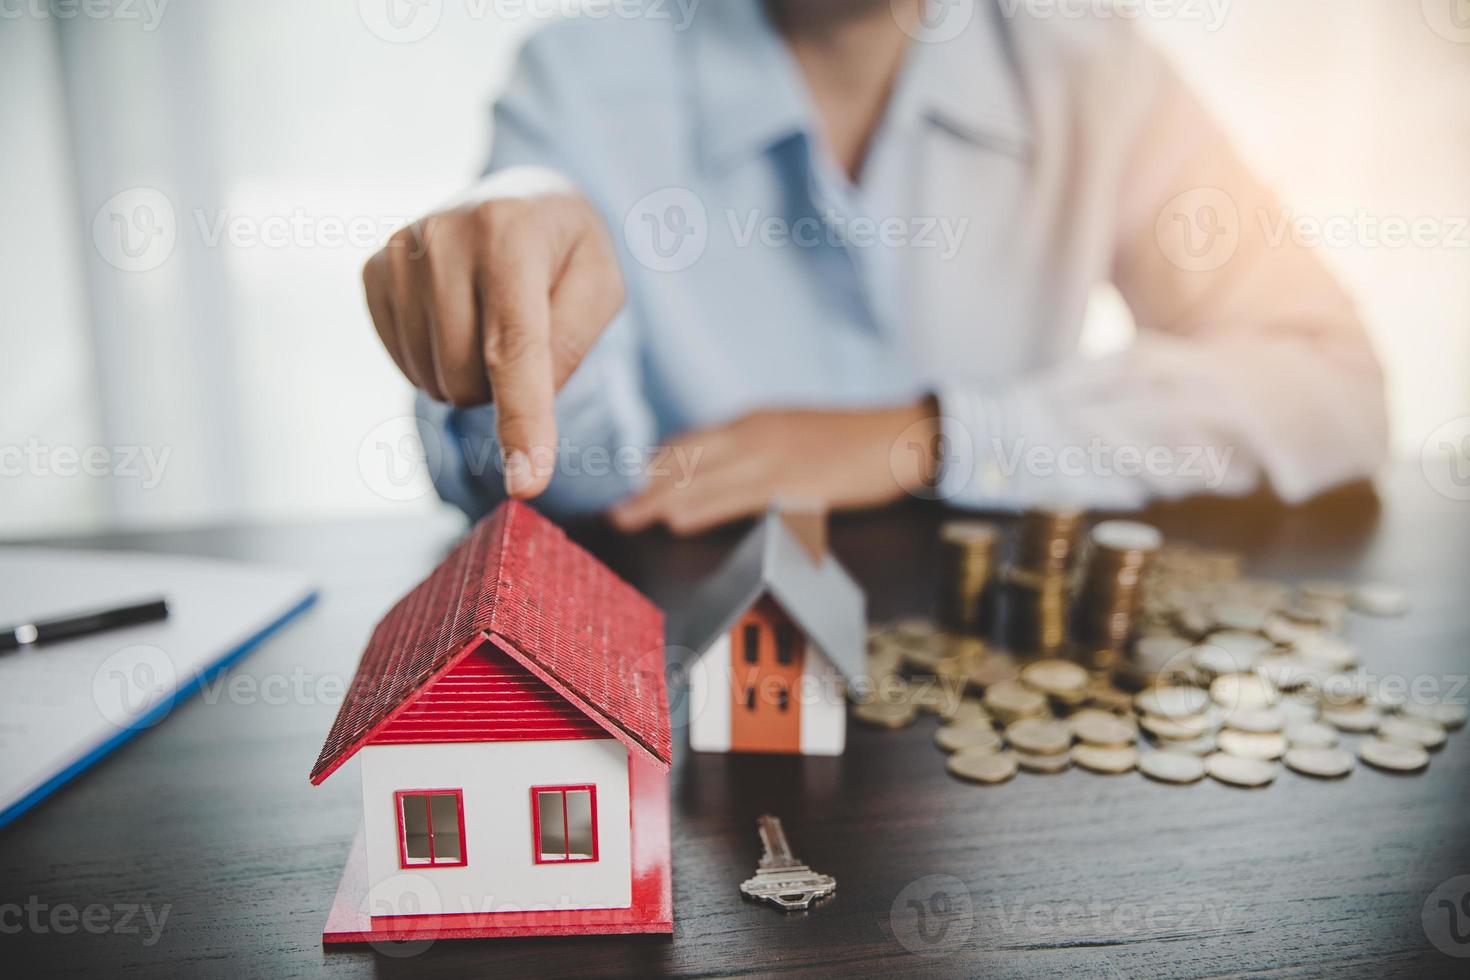 husmodell med stackmynt, affärshand planerar att spara pengar på mynt för att köpa hem. koncept för fastighetstrappa, bolån med fastighetsinvestering och sparande eller investering för ett hus foto